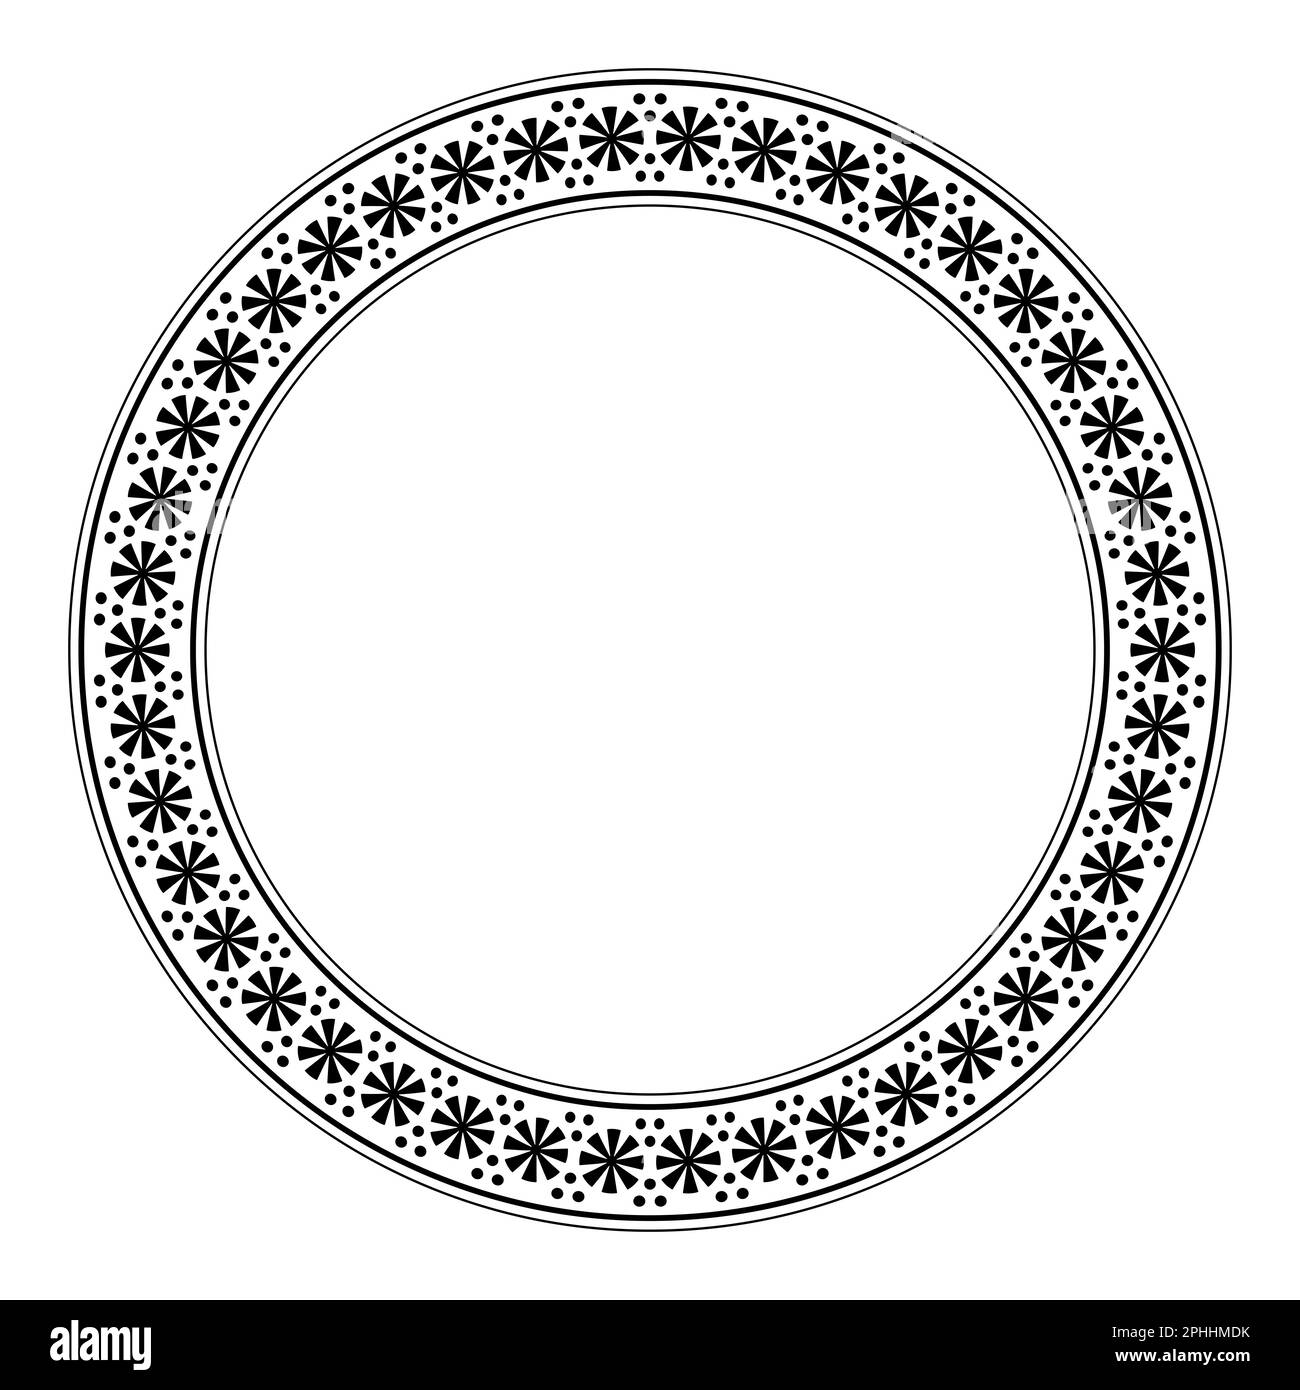 Kreisrahmen mit Rosettenmuster und Punkten. Dekorativer runder Rand mit rundem, stilisiertem Blumenmotiv, das auf alten griechischen Töpfern zu finden ist. Stockfoto